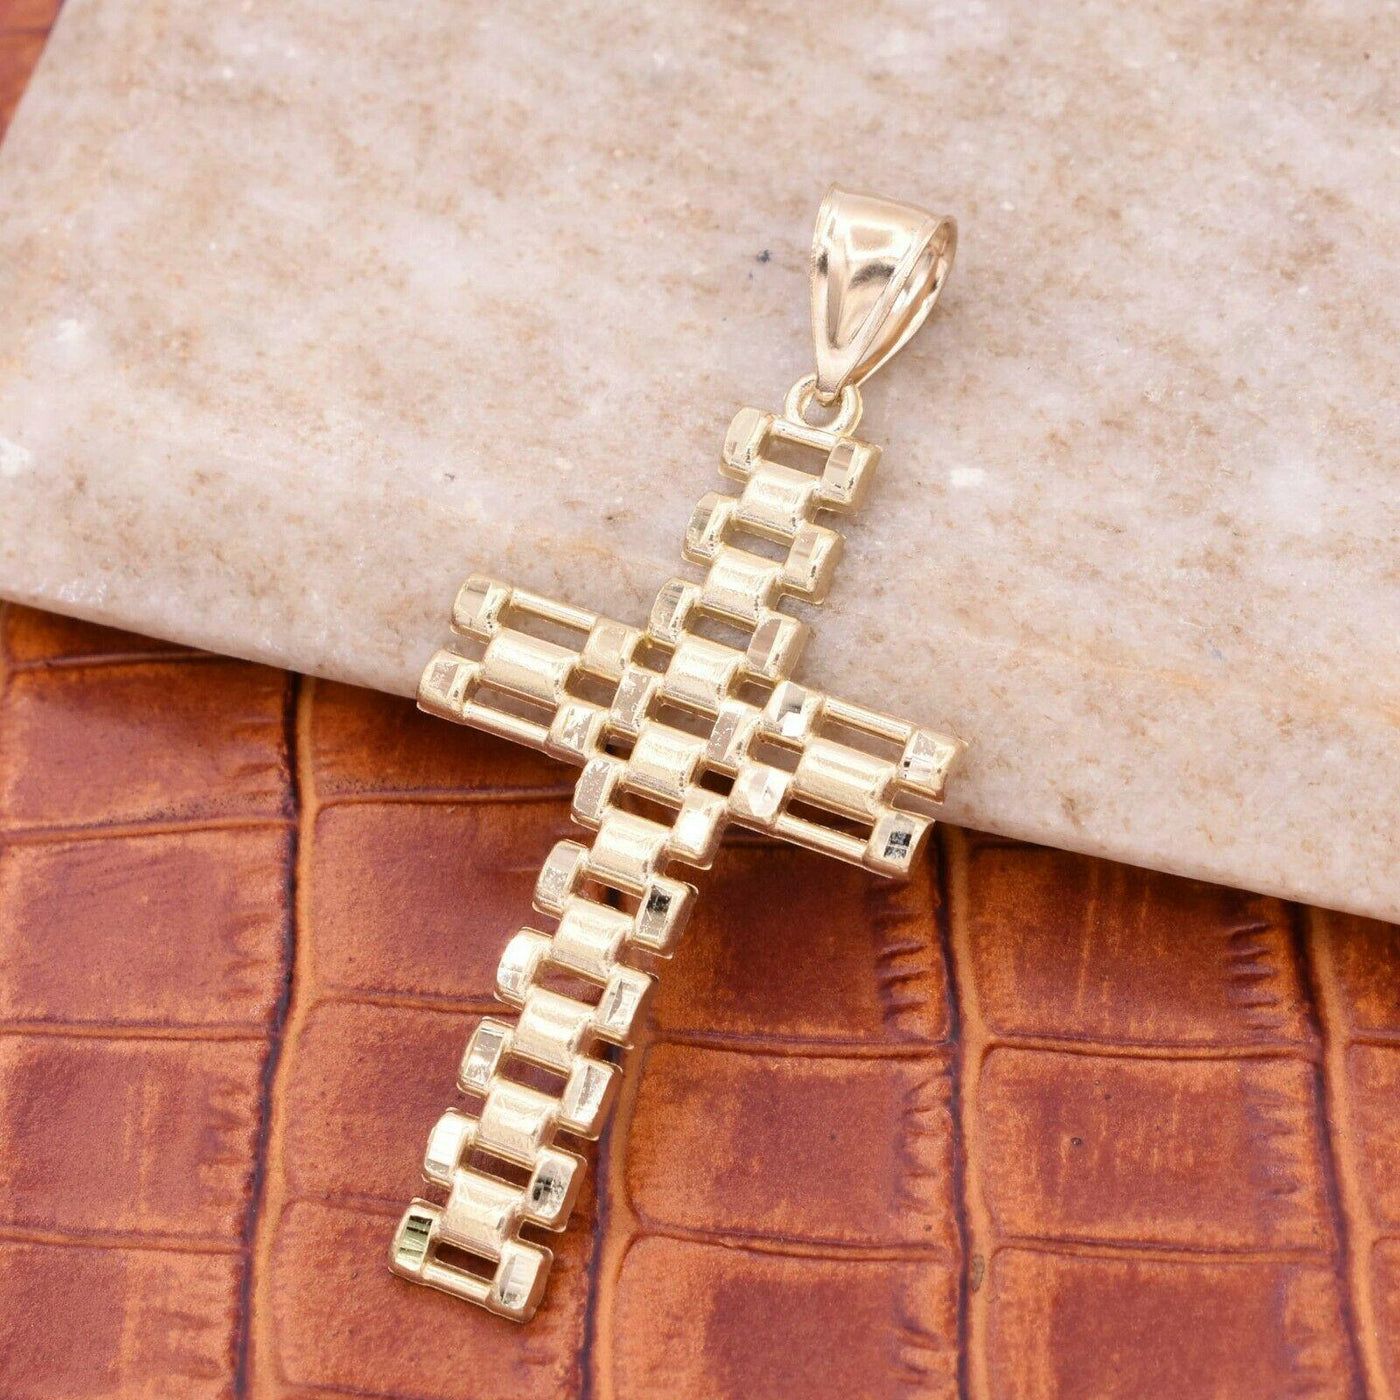 2 3/4" Rlx Railroad Cross Textured Pendant 10K Yellow Gold - bayamjewelry